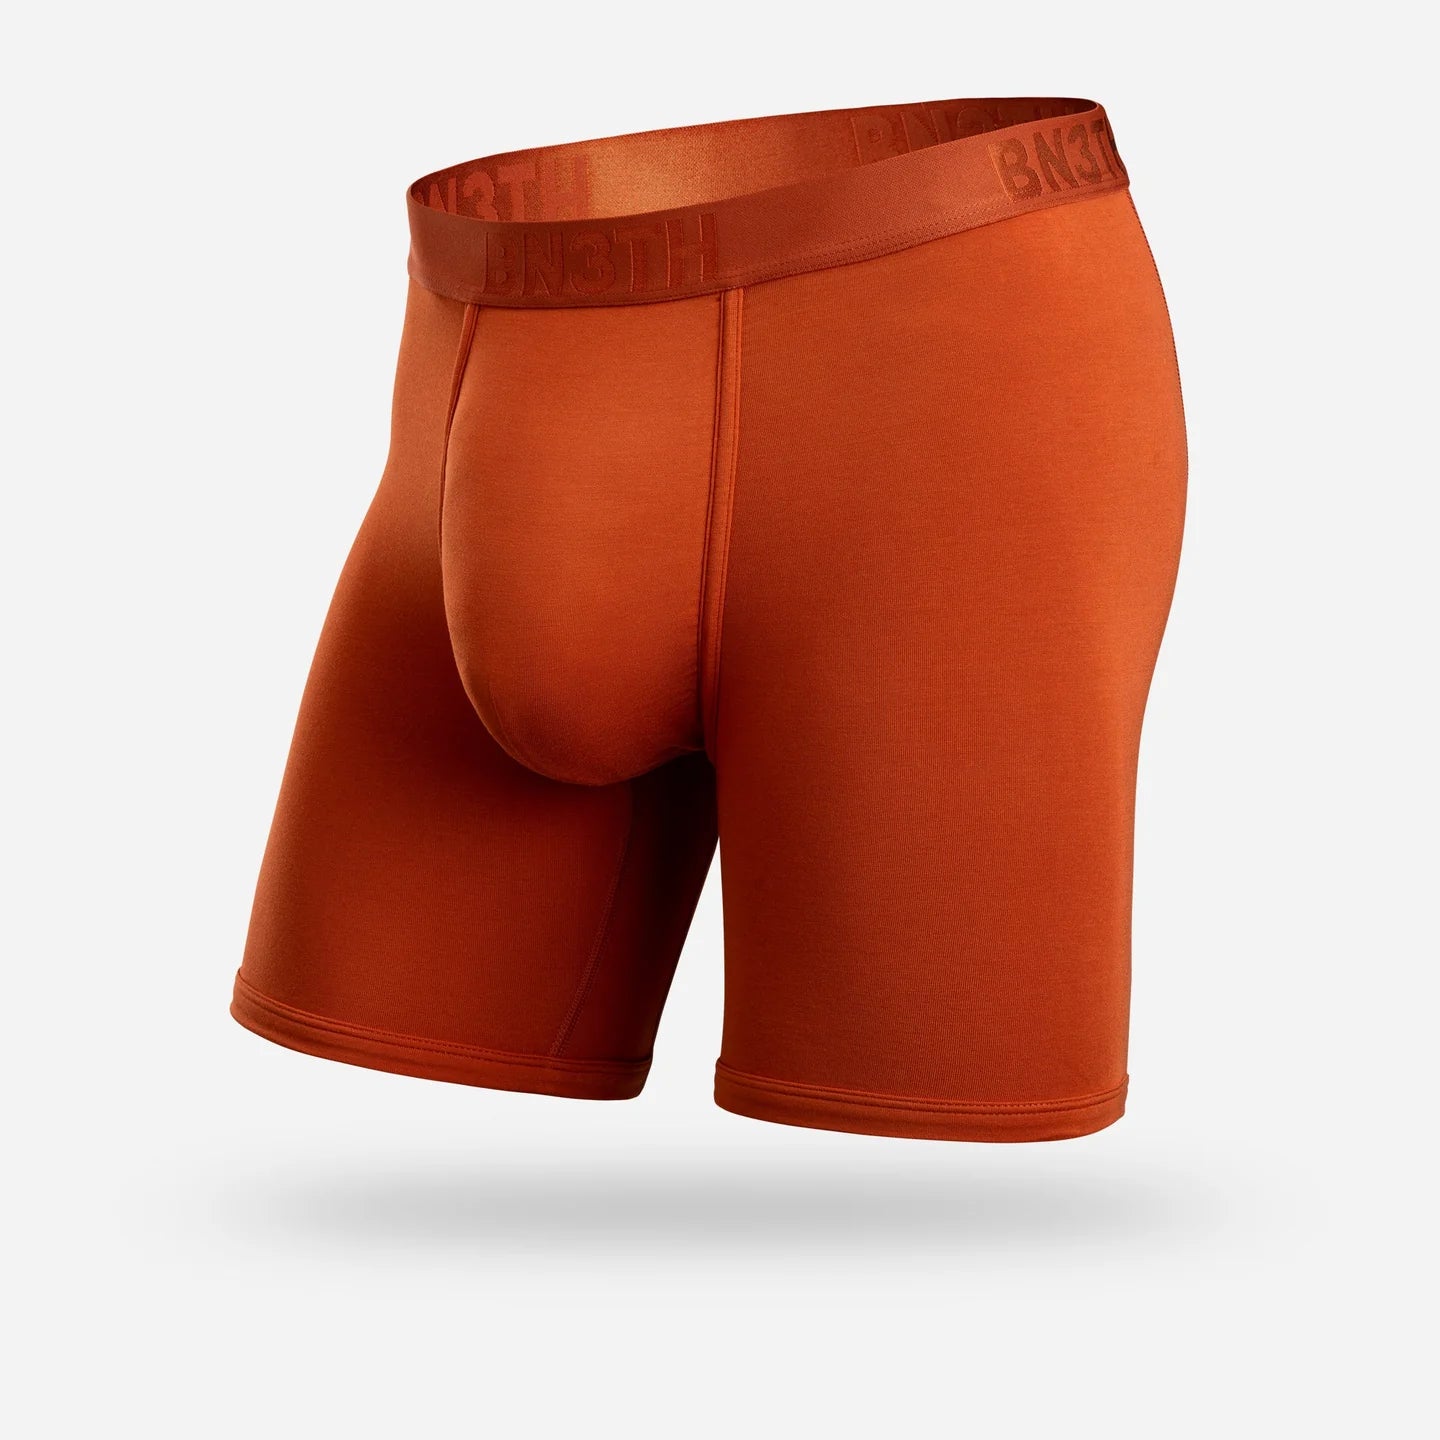 BN3TH Underwear for Men